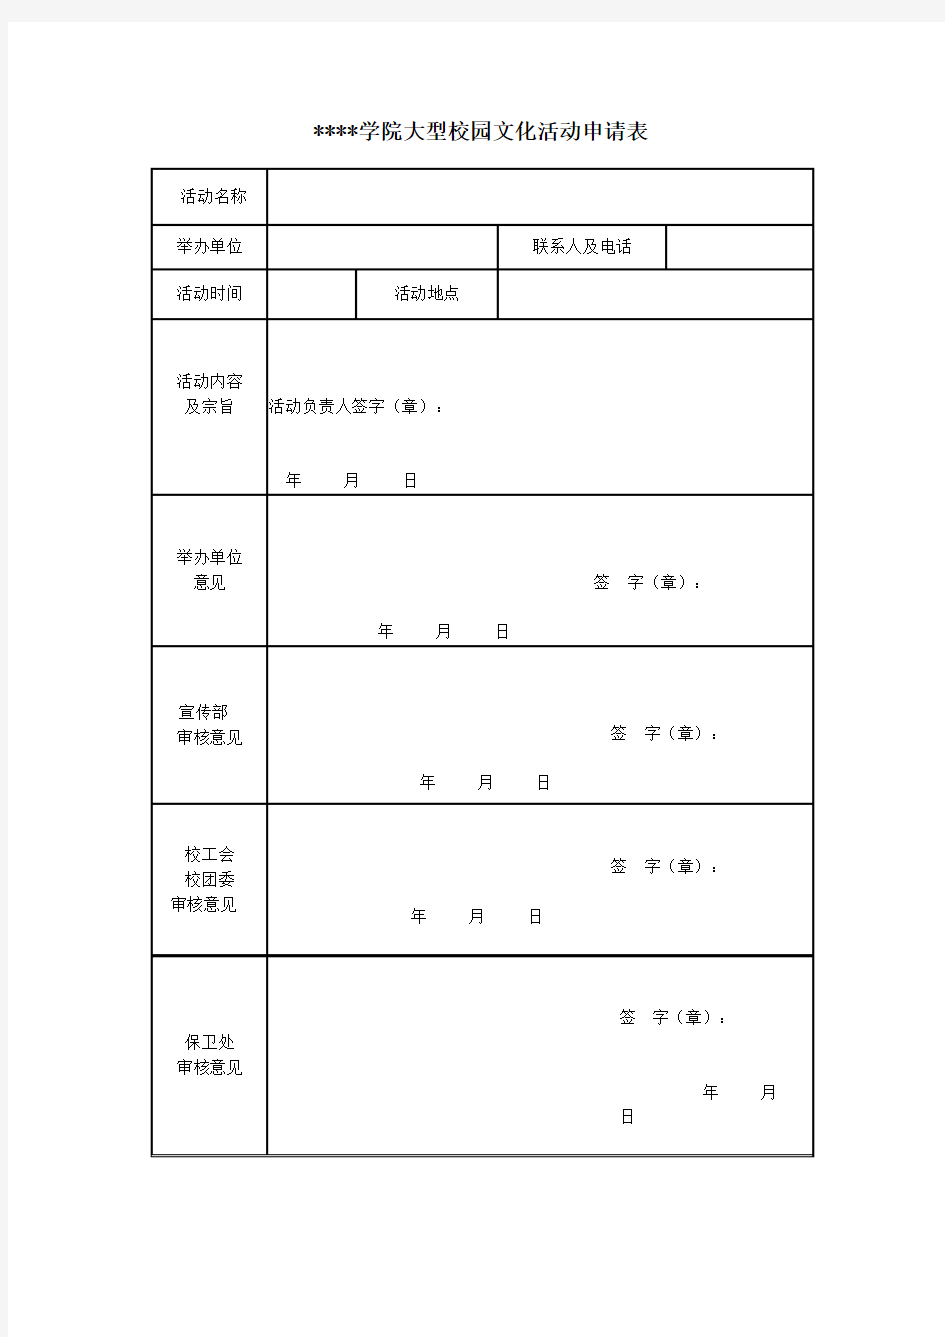 乐山师范学院大型校园文化活动申请表【模板】